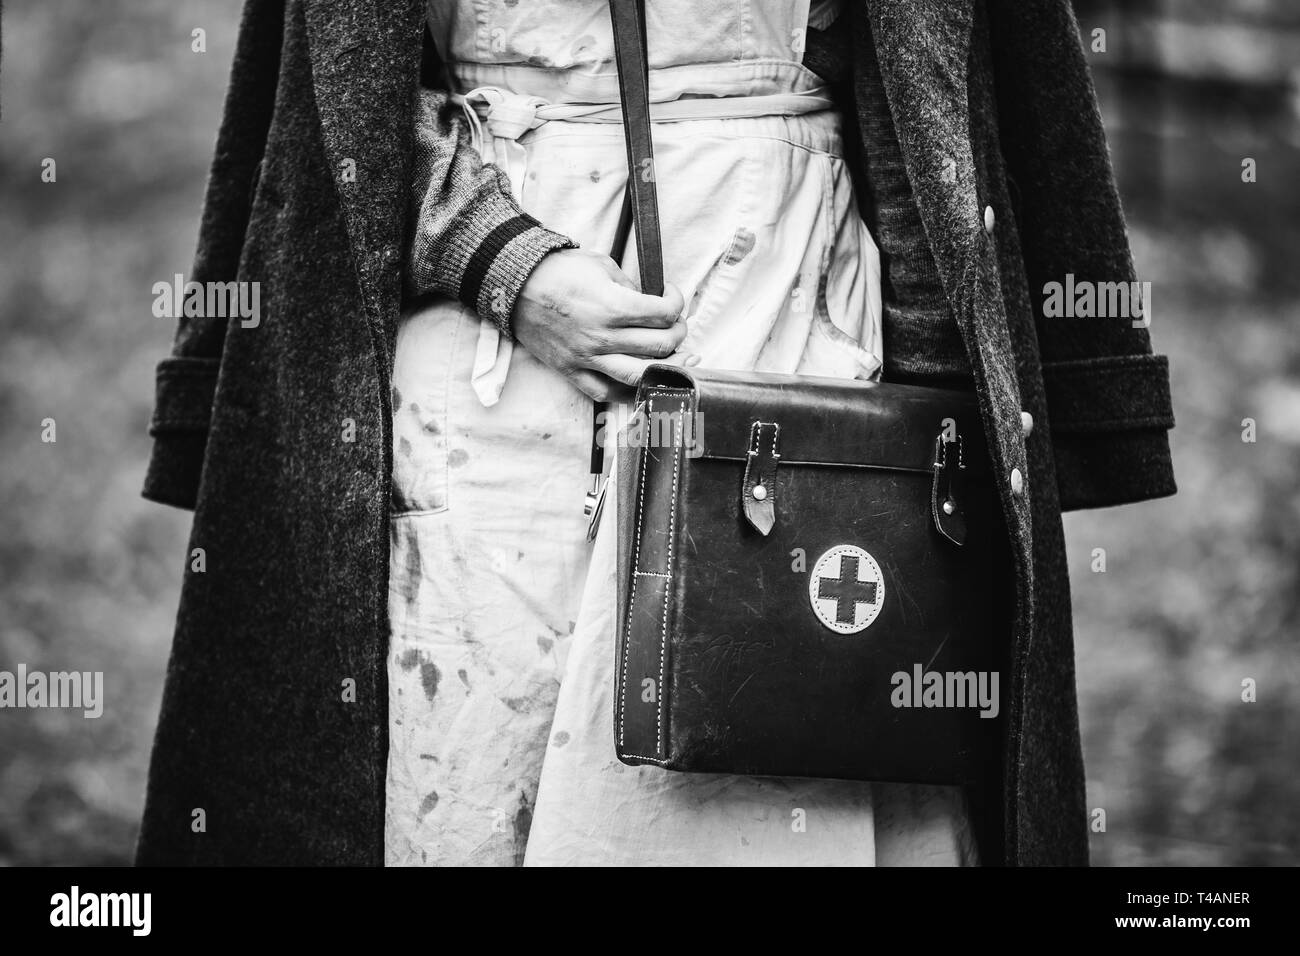 La reconstitution médiévale historique porte de Paramédic infirmière allemande Seconde Guerre mondiale uniforme avec trousse de premiers secours. Photo en noir et blanc. La SECONDE GUERRE MONDIALE WW2. Banque D'Images